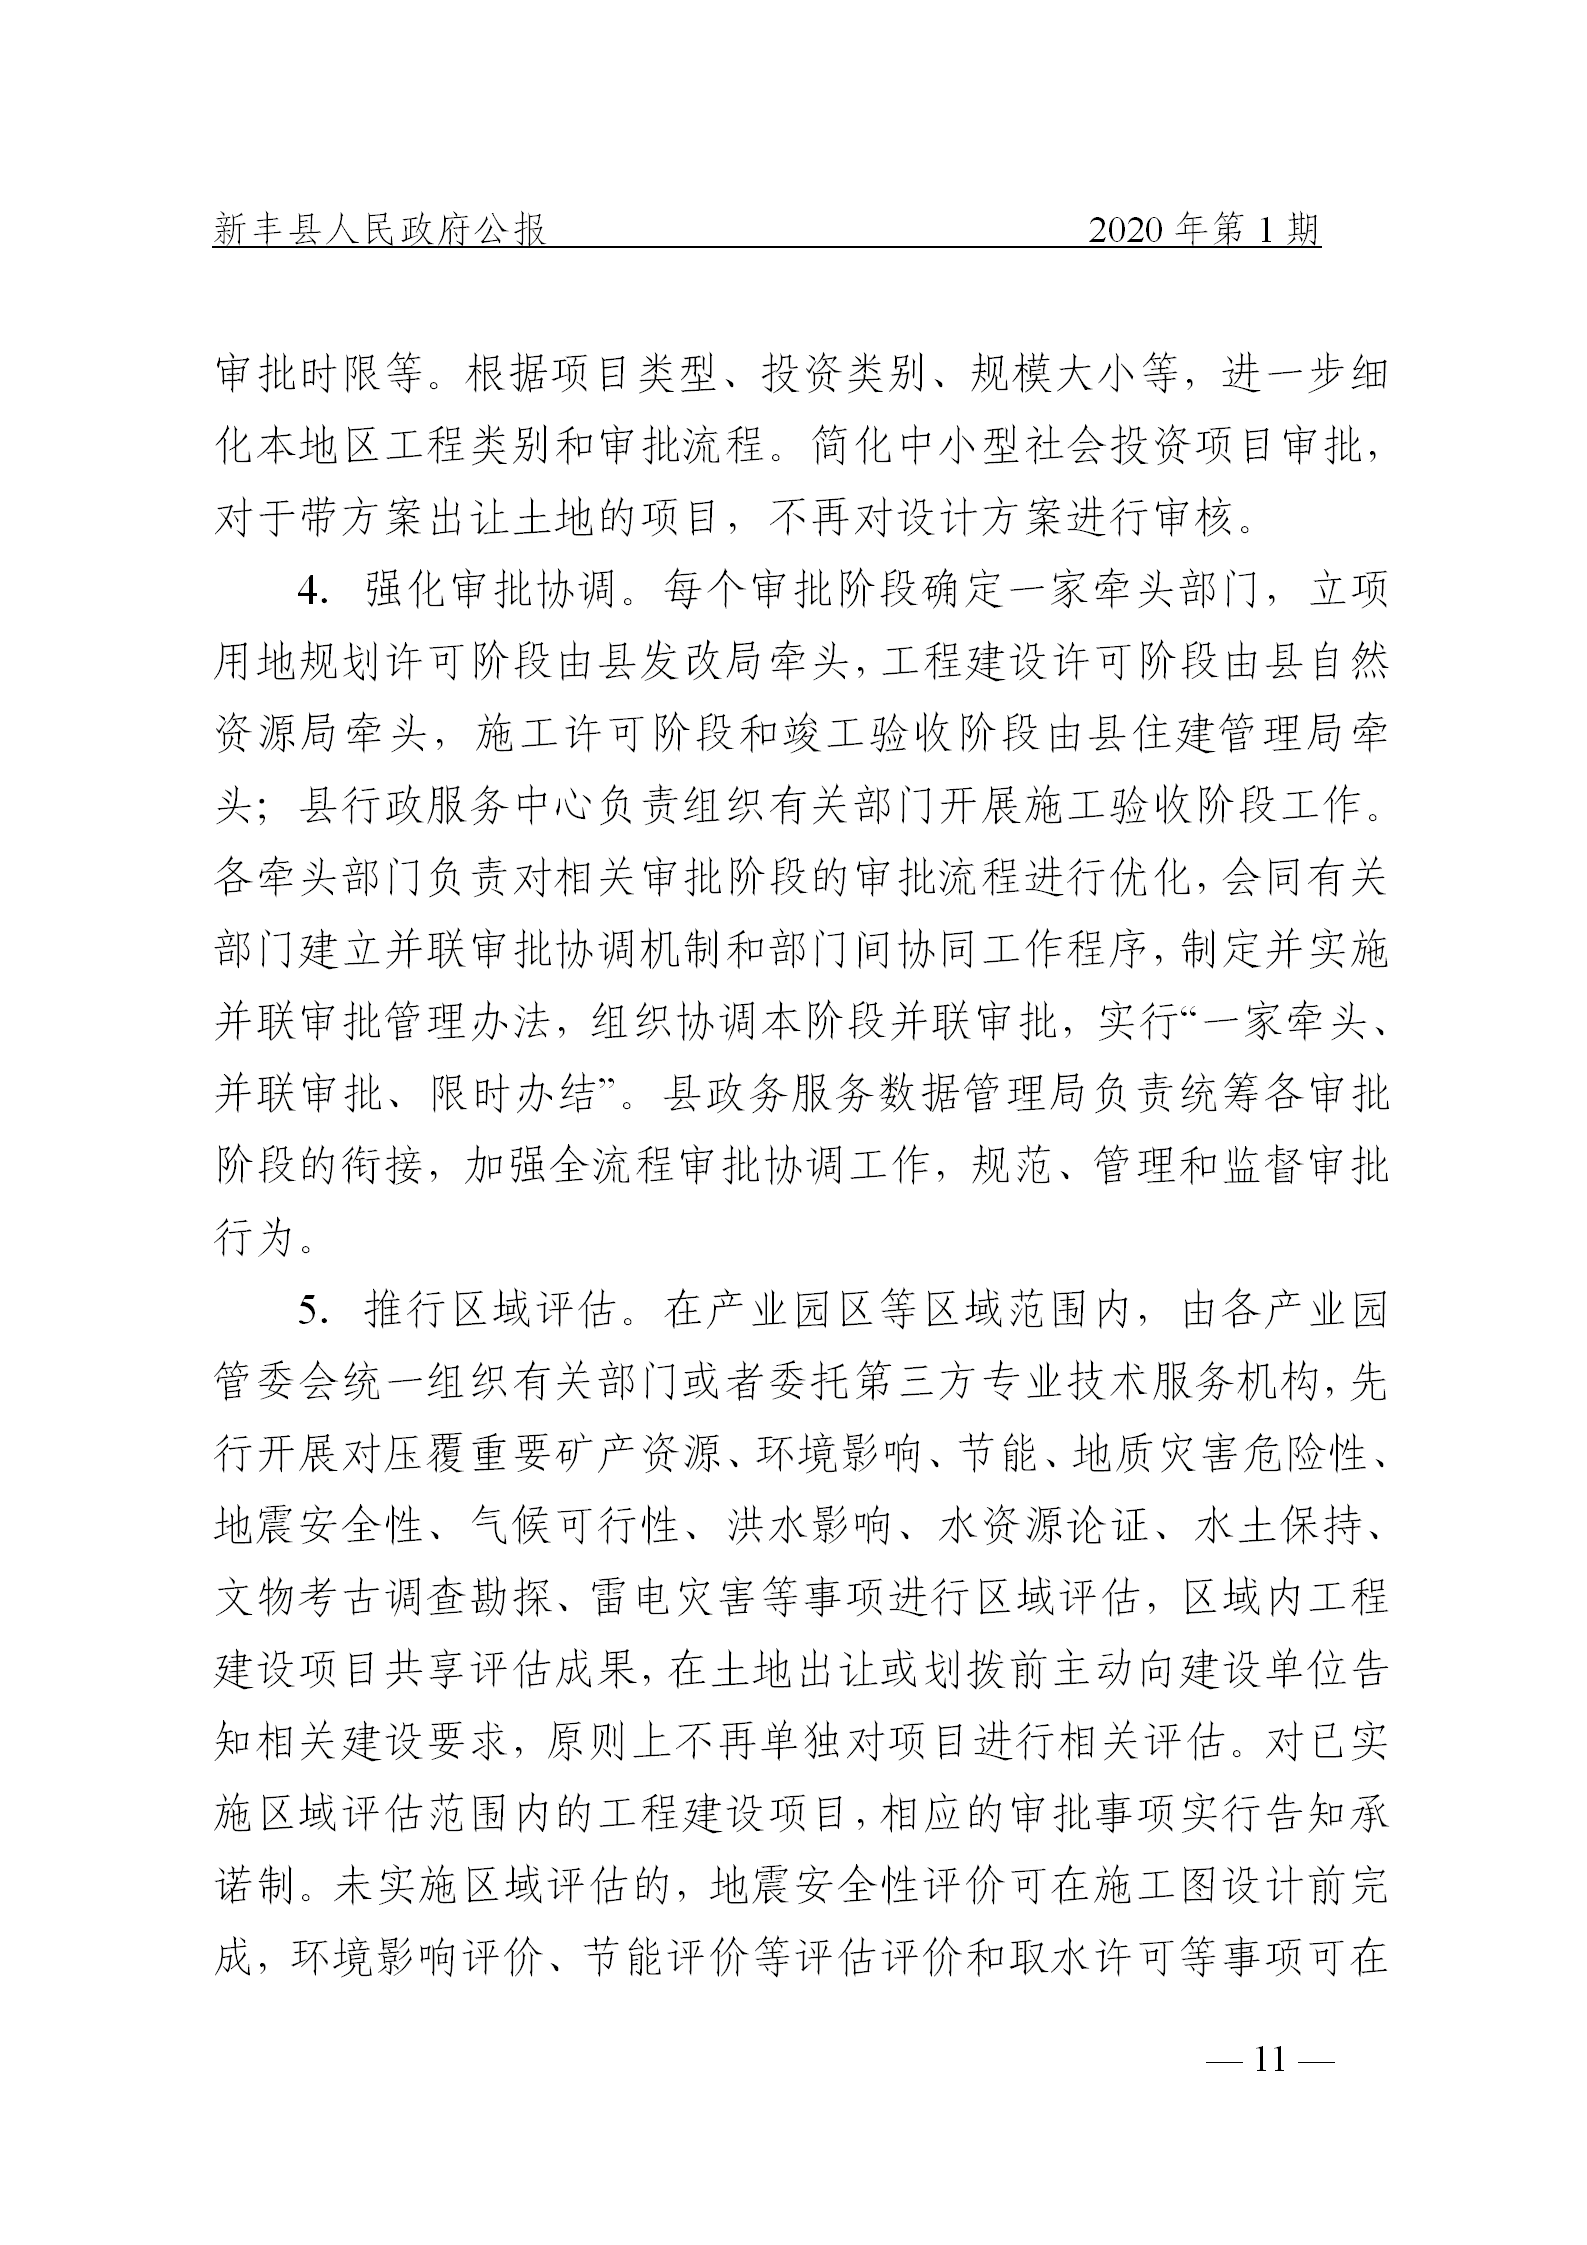 《新丰县人民政府公报》2020年第1期(1)_11.png